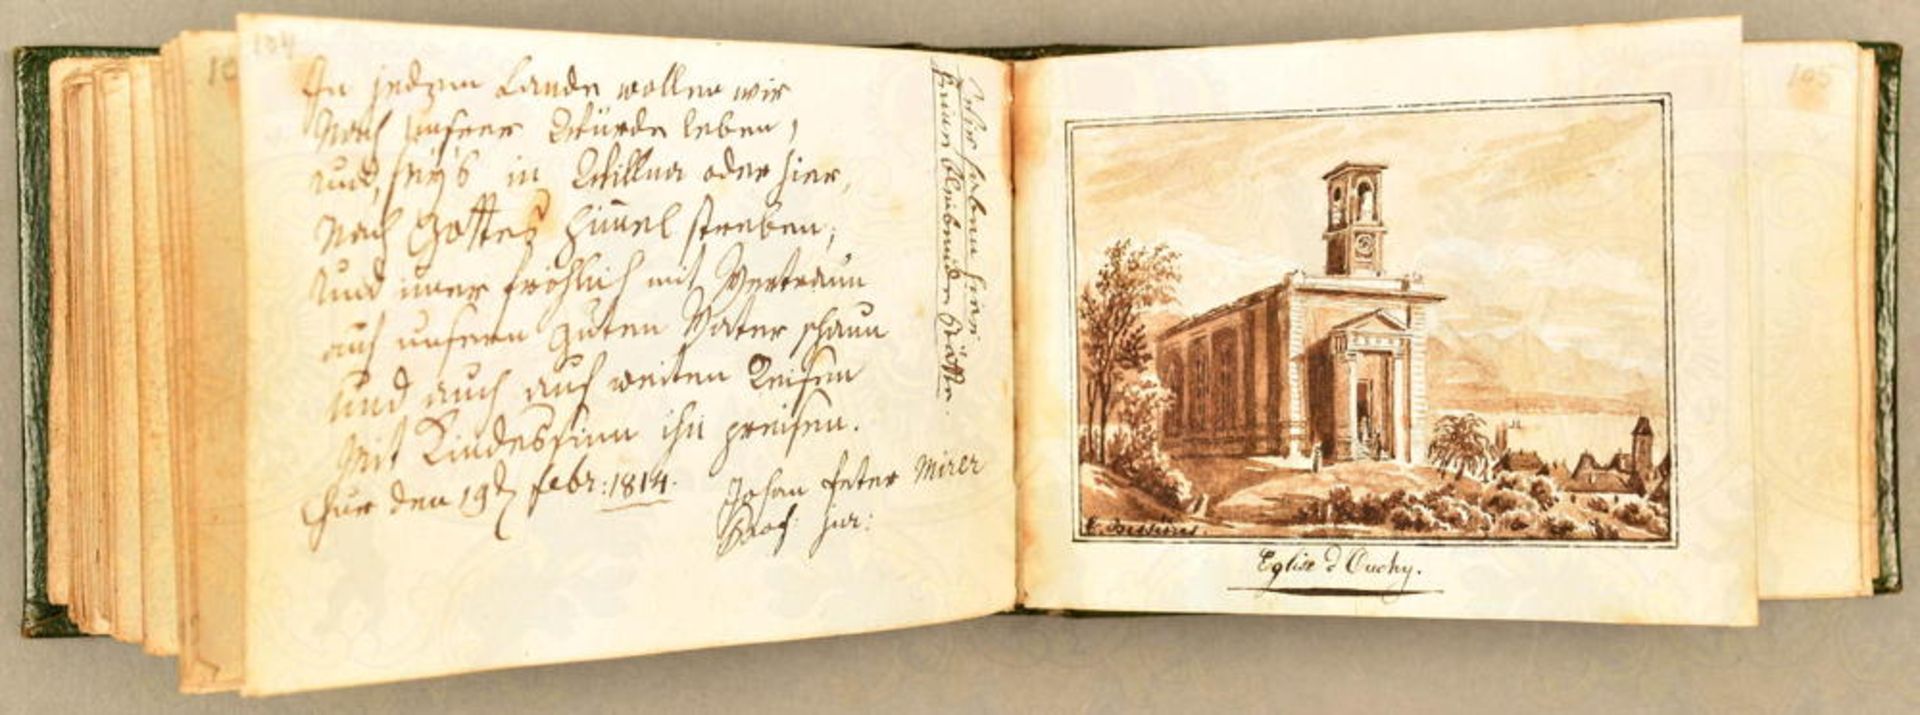 Poesie-Album einer Dame 1813-1844